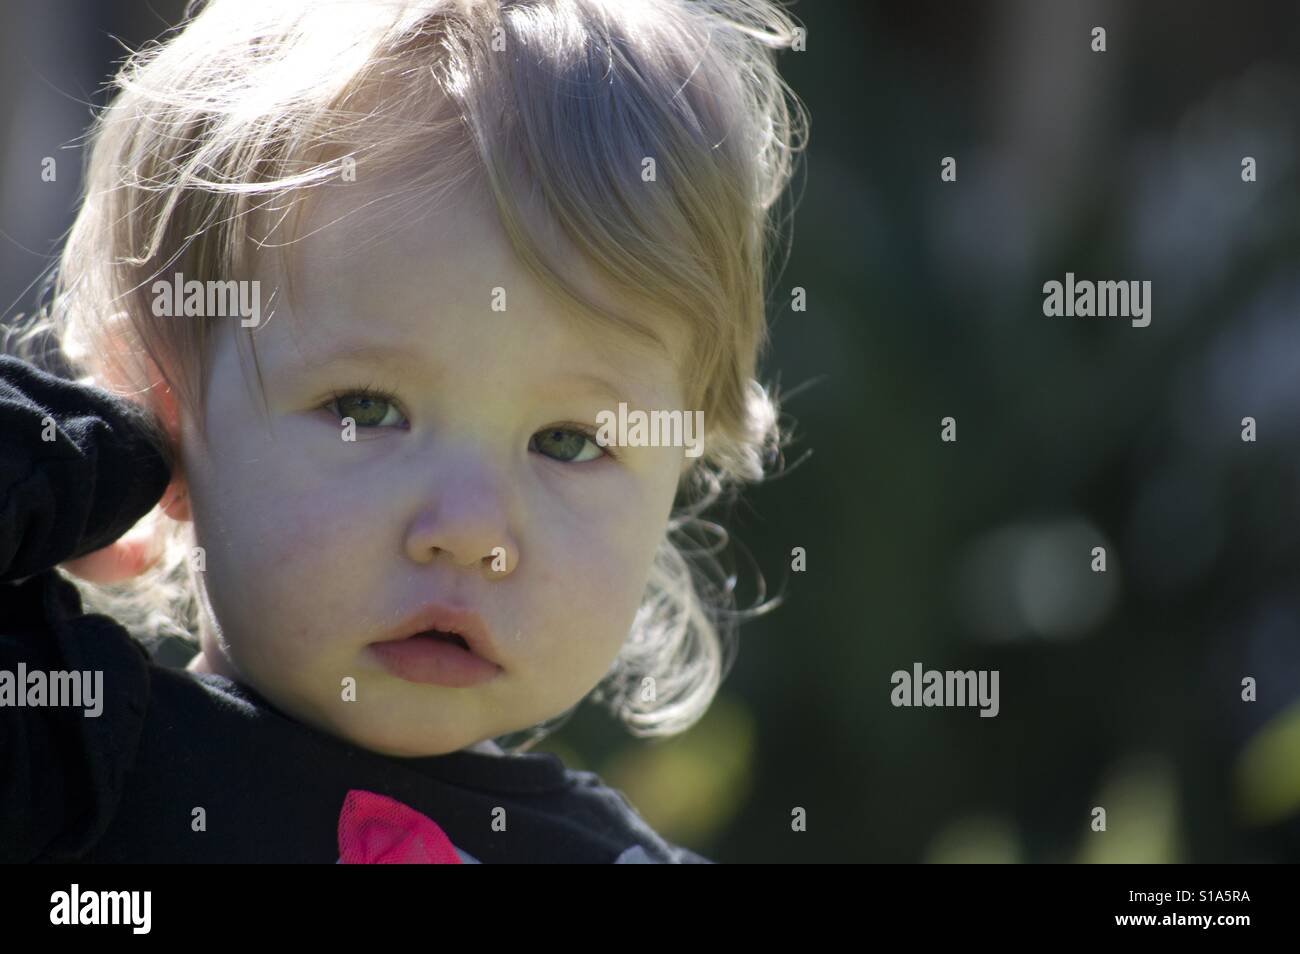 Fille de 2 3 ans Banque de photographies et d'images à haute résolution -  Alamy